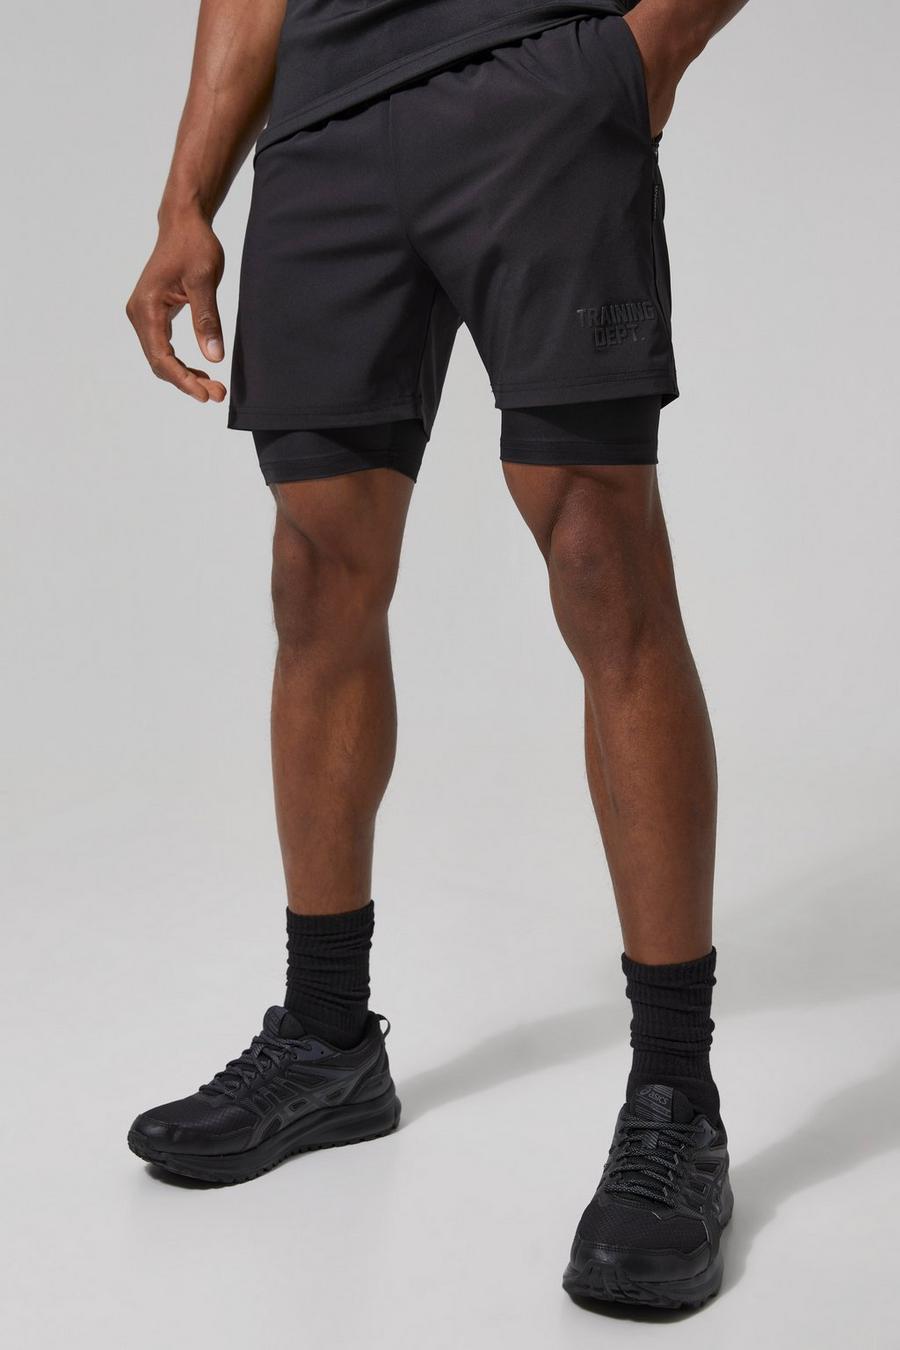 Man Active Training Dept 2-in-1 Shorts, Black schwarz